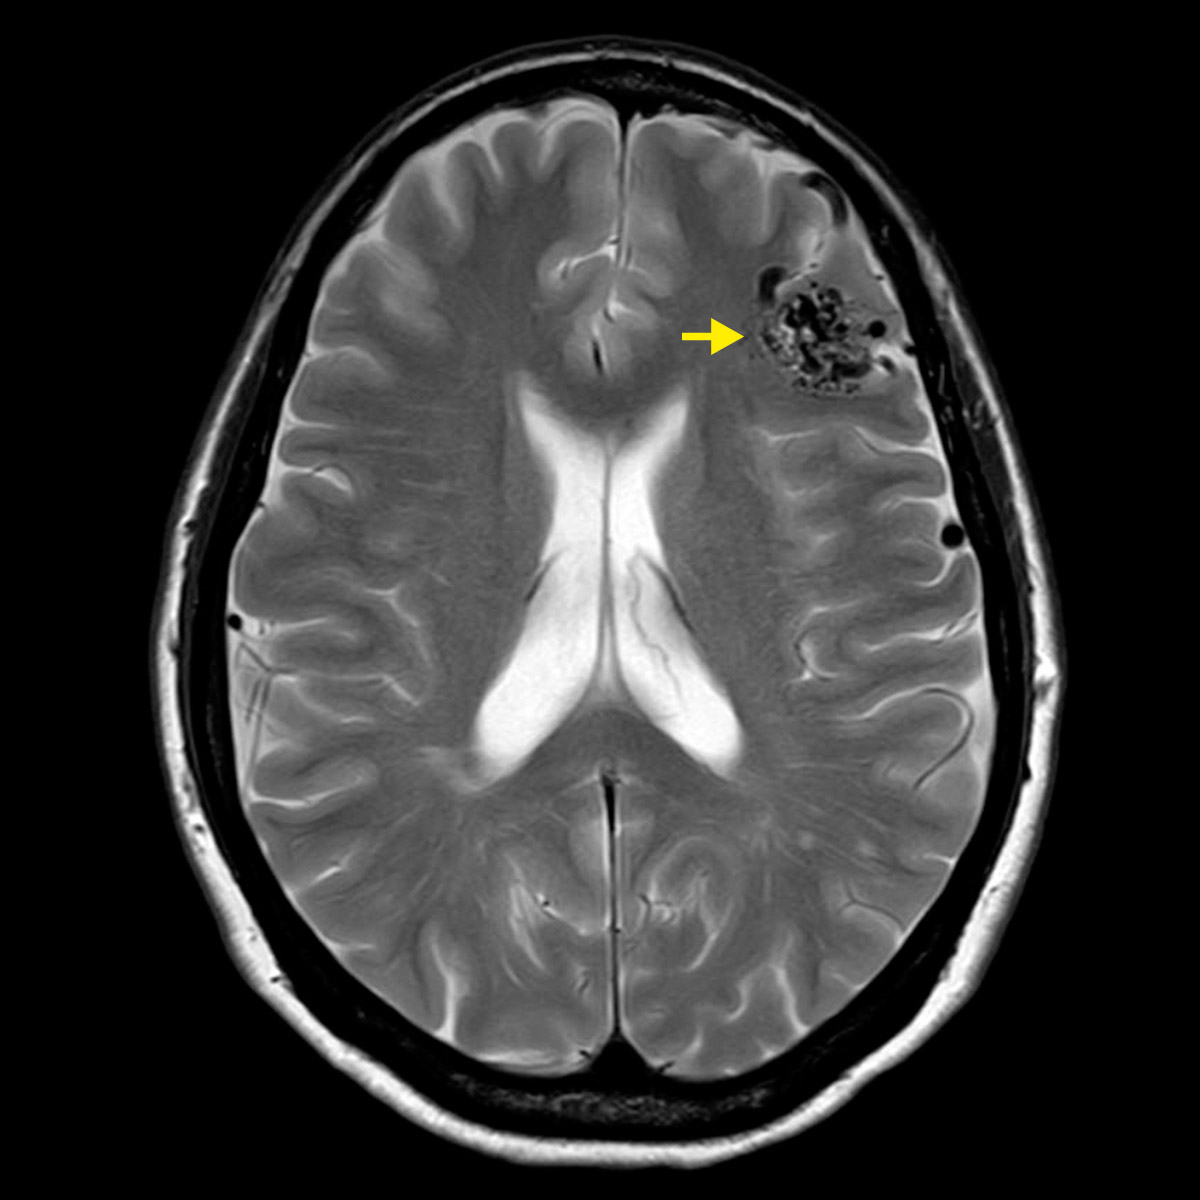 ​Schädel-MRI mit deutlich sichtbarer AVM rechts oben im Bild. Ein gelber Pfeil zeigt zur AVM. Die Gefässe der AVM sind als schwarze Punkte und schlangenförmige Linien zu erkennen.